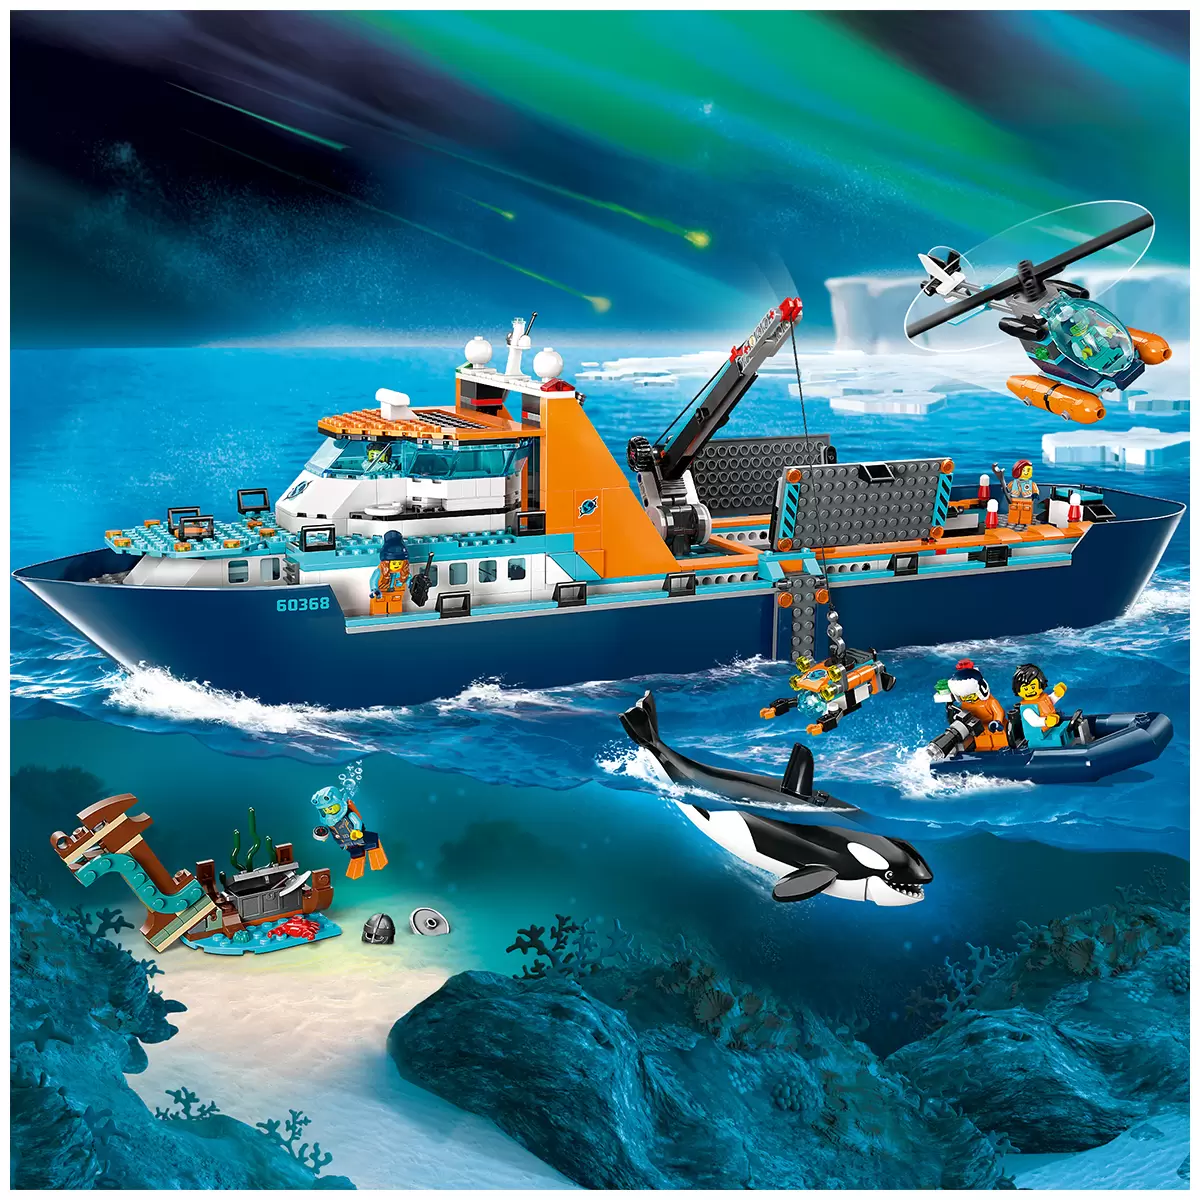 lego city arctic explorer ship 60368